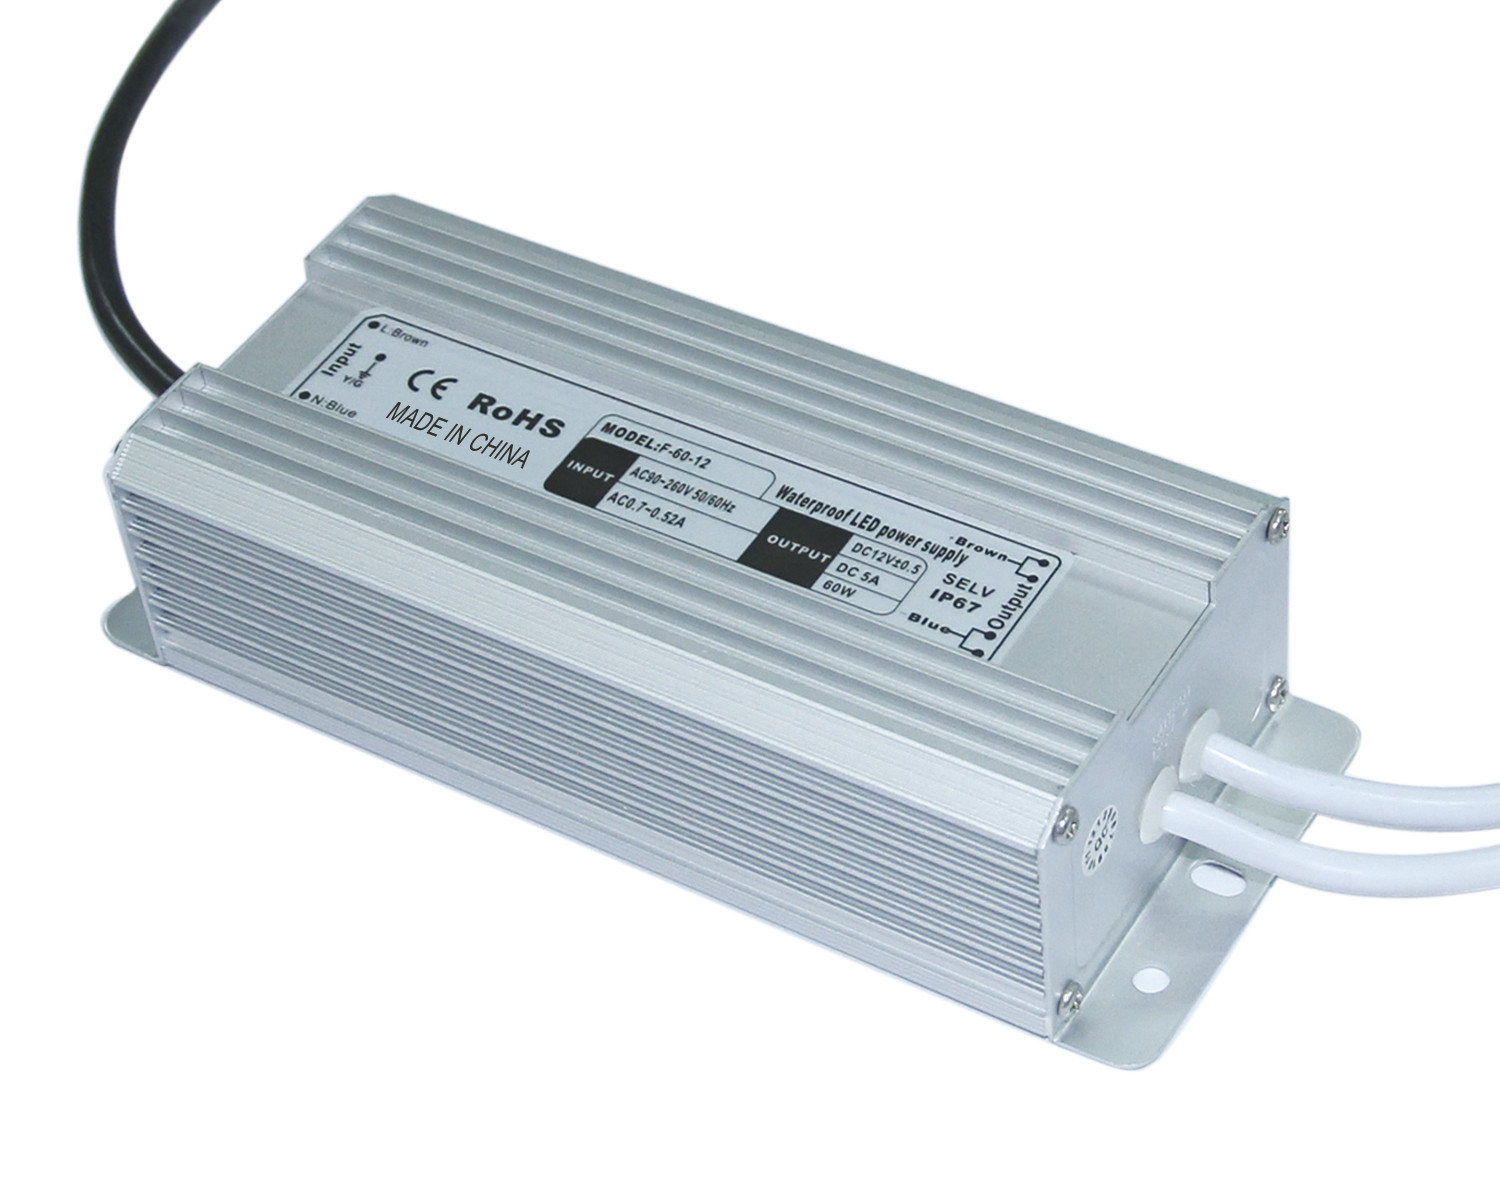 Led Strip chiếu sáng chống thấm nước LED Driver 60W 6.7A Power Supply